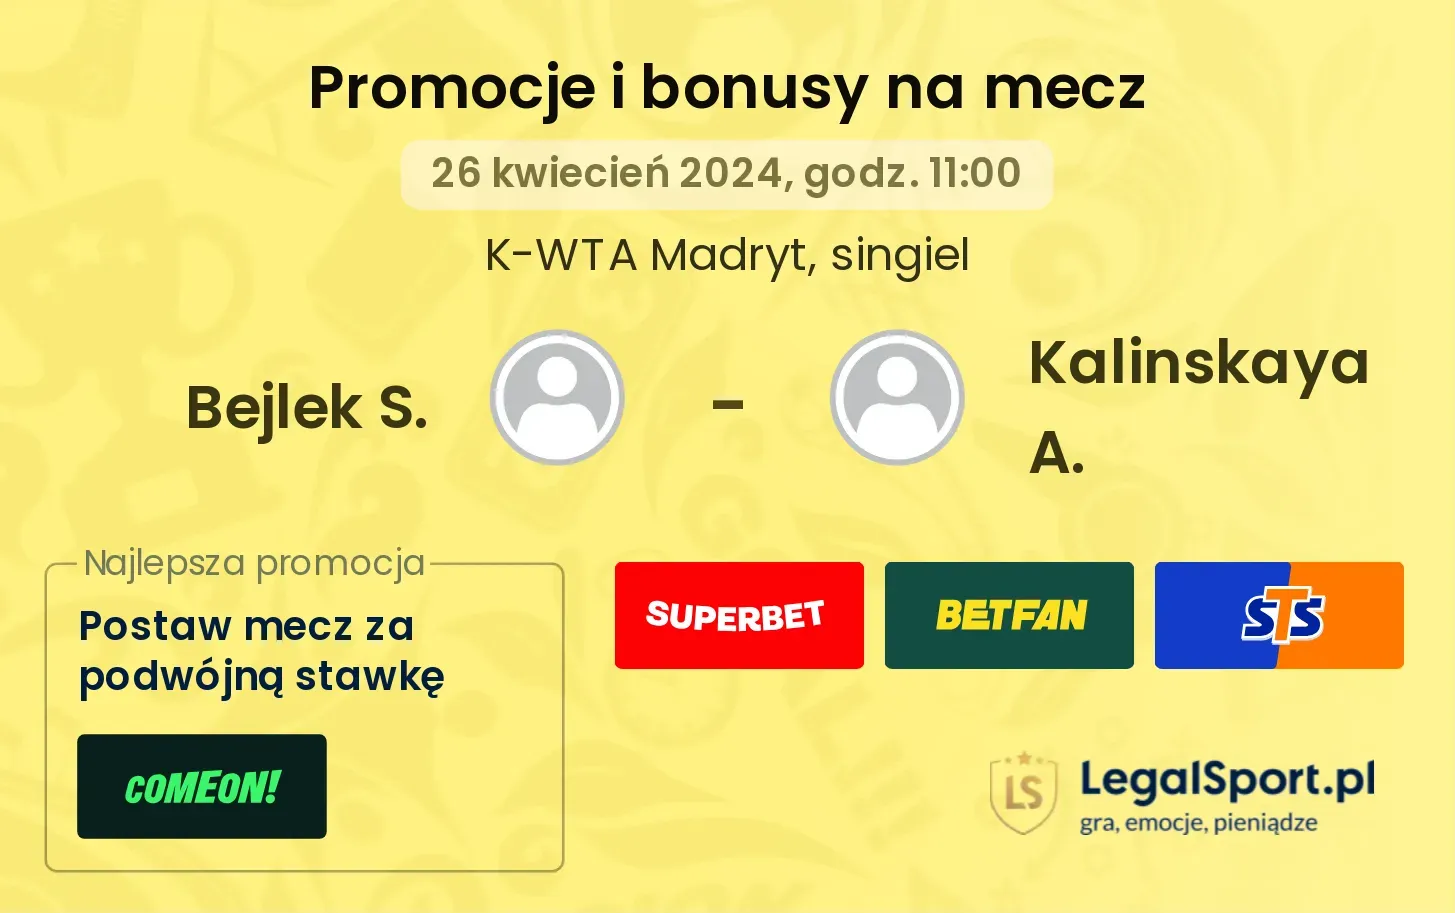 Bejlek S. - Kalinskaya A. promocje bonusy na mecz